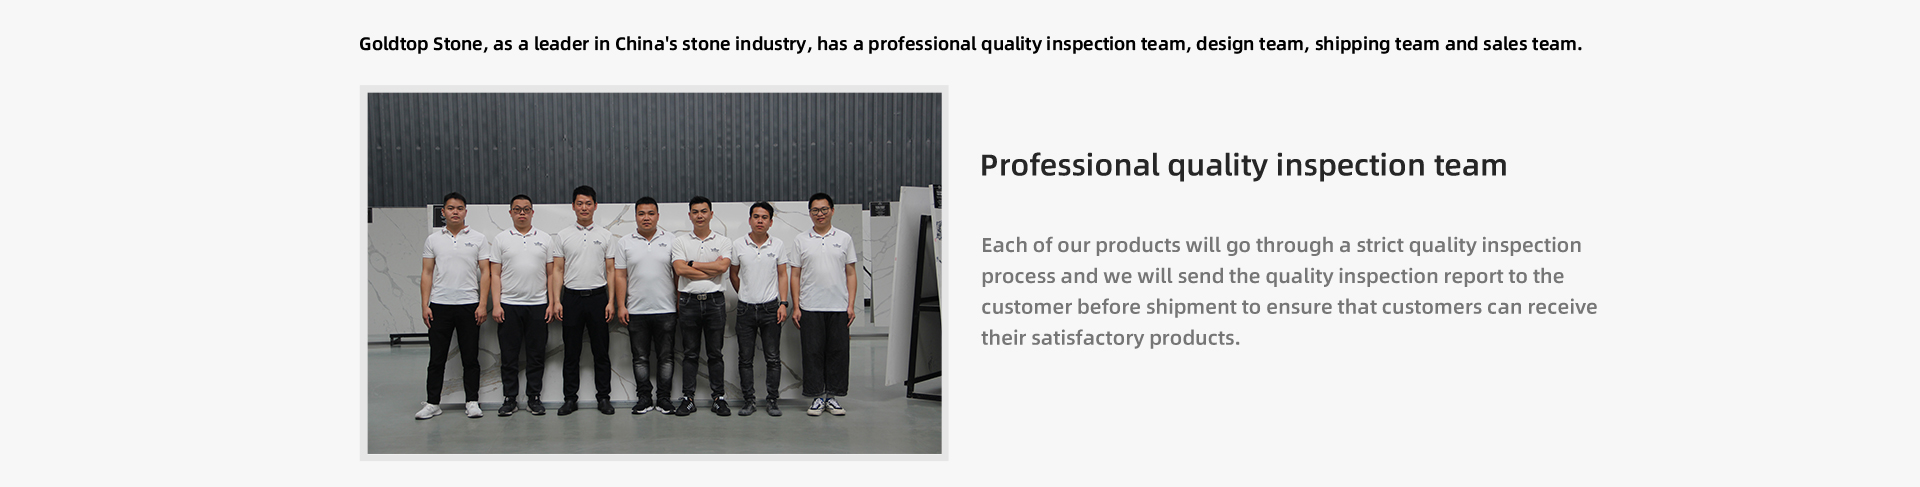 Var och en av våra produkter kommer att gå igenom en strikt kvalitetsinspektionsprocess och vi kommer att skicka kvalitetsinspektionsrapporten till kunden före leverans för att säkerställa att kunderna kan få sina tillfredsställande produkter.